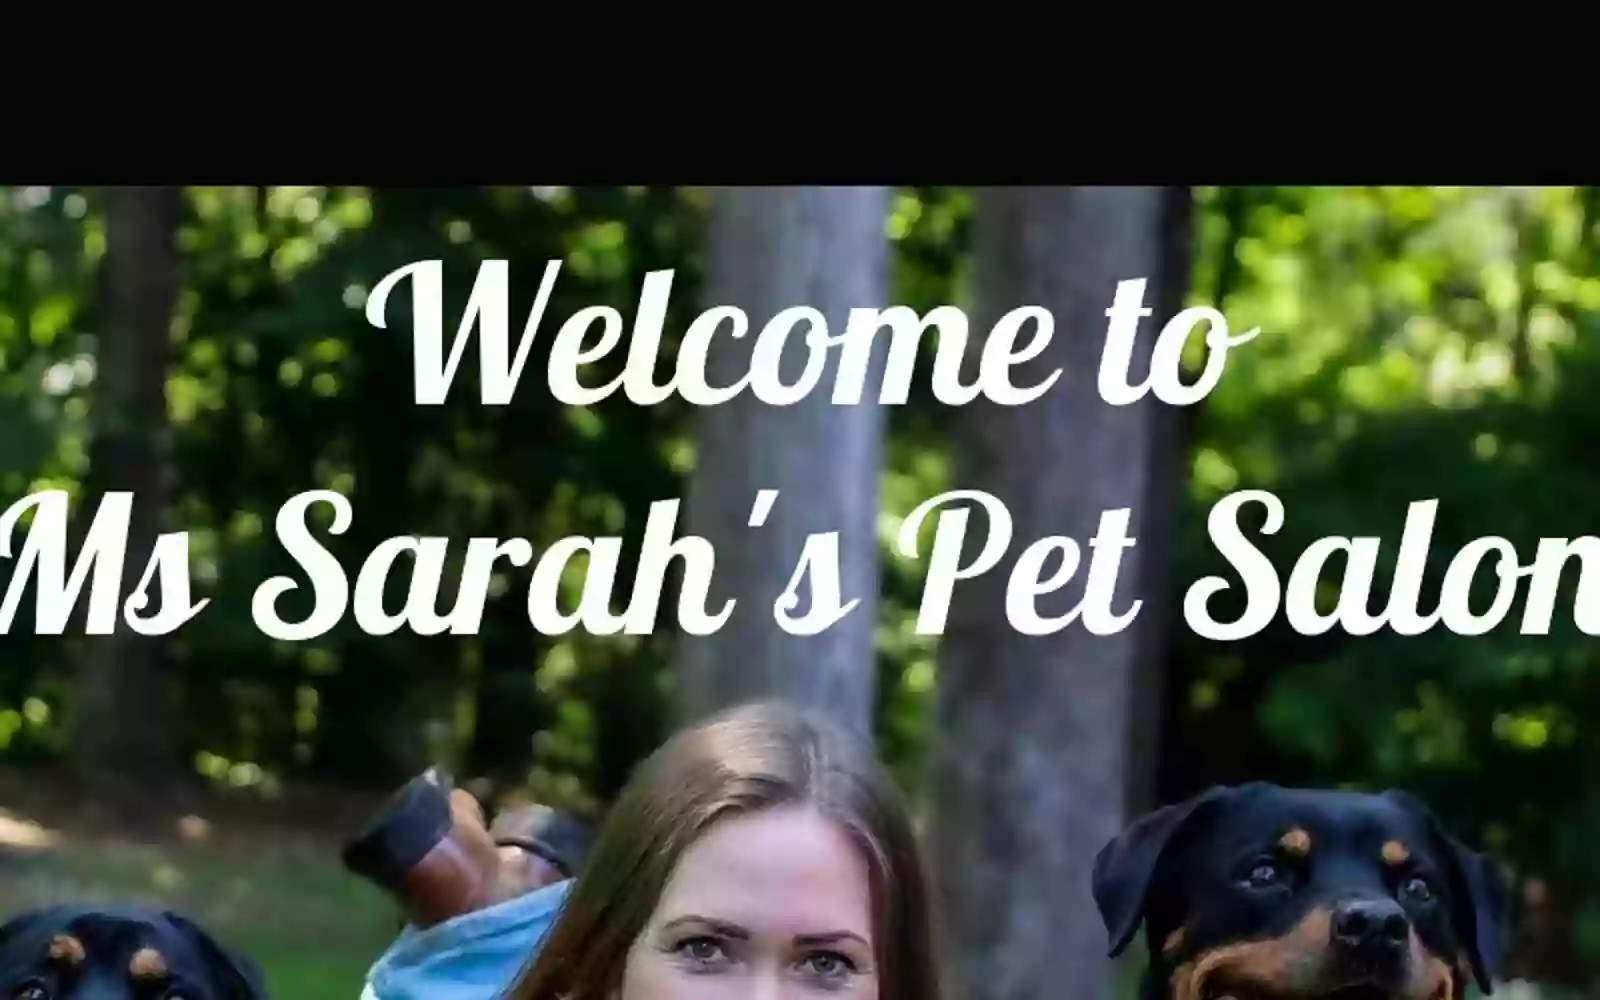 Ms. Sarah's Pet Salon